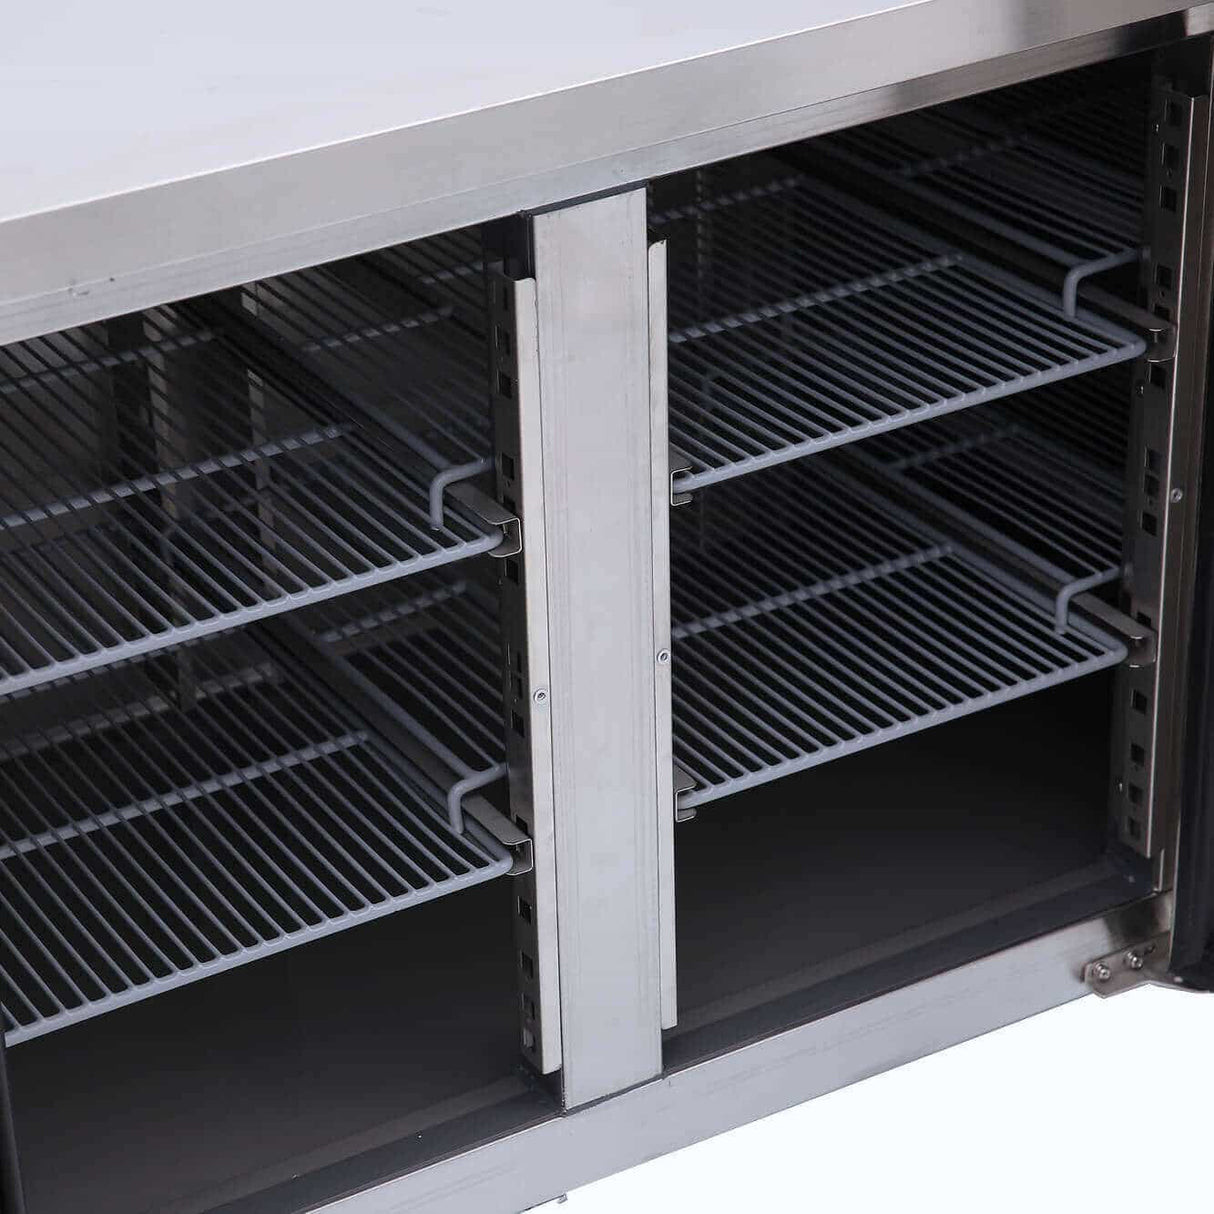 Under Bench Freezer - 553L - 4 Doors - Stainless Steel